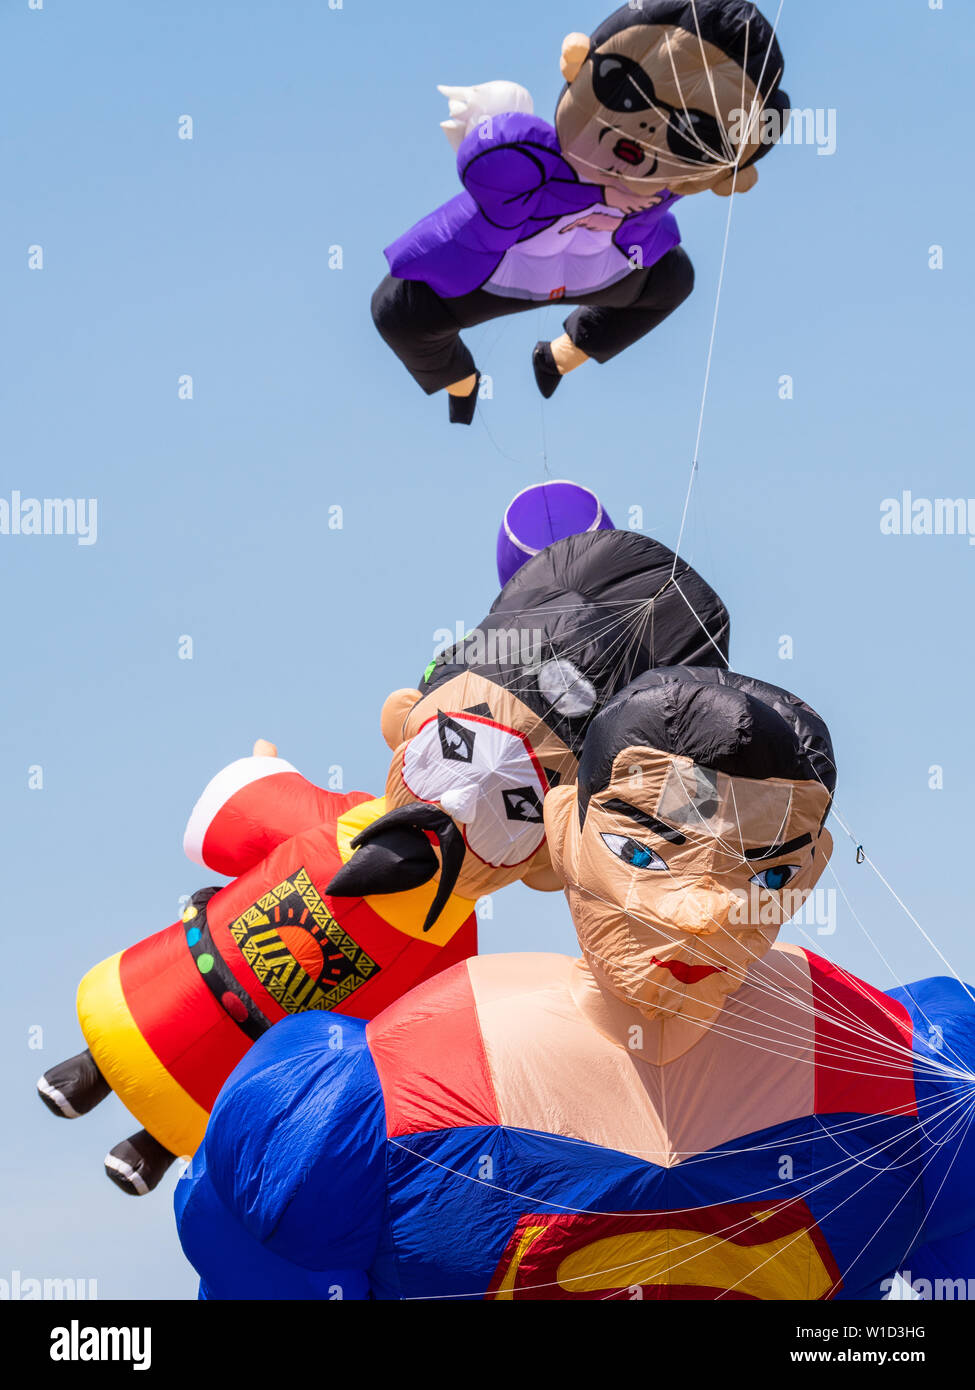 Pasir Gudang, Malaisie - 3 mars, 2019 : Soft kites représentant Superman, un ancien roi chinois et artiste coréen Psy, volant à la 24e Pasir Gudang Banque D'Images